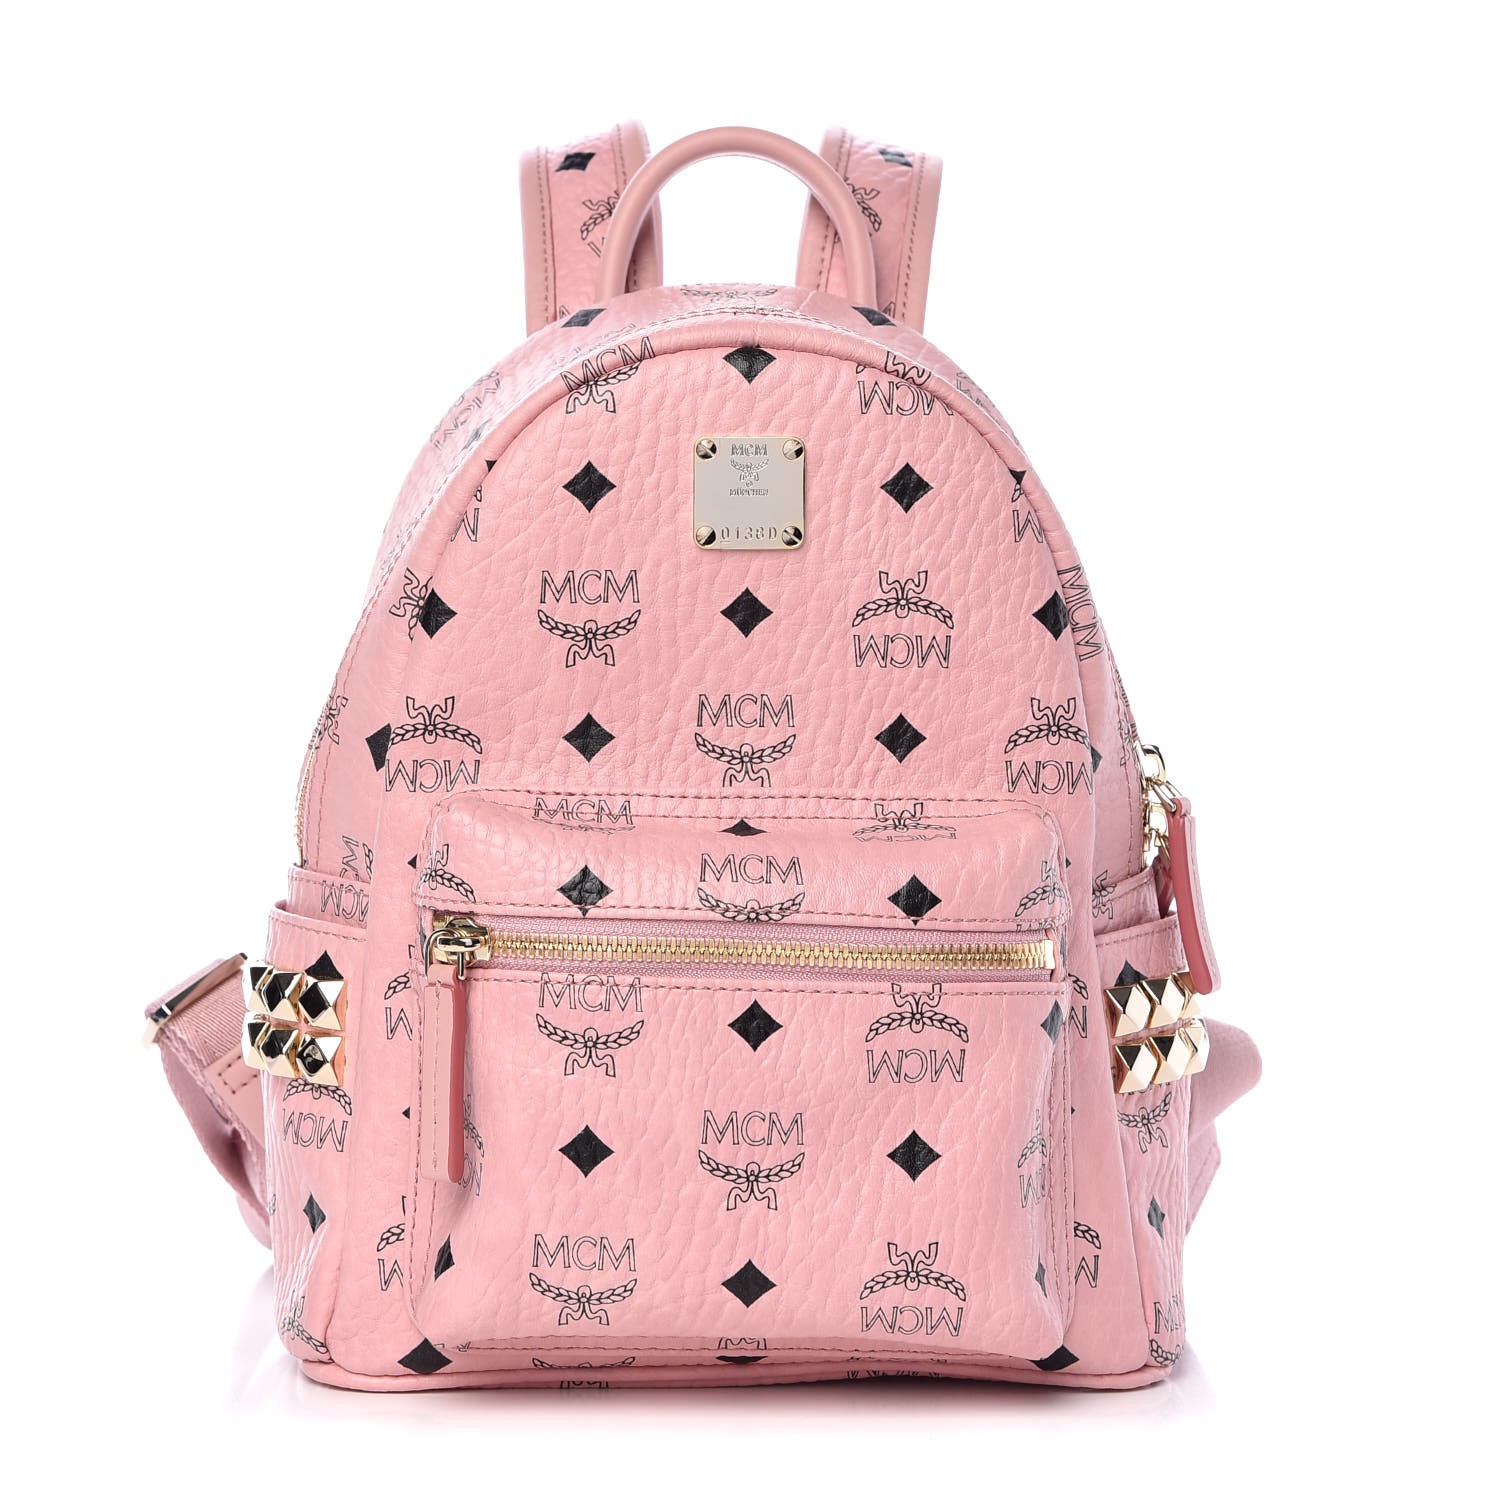 Mcm Visetos Side Stud Mini Stark Backpack Pink 351828 Fashionphile